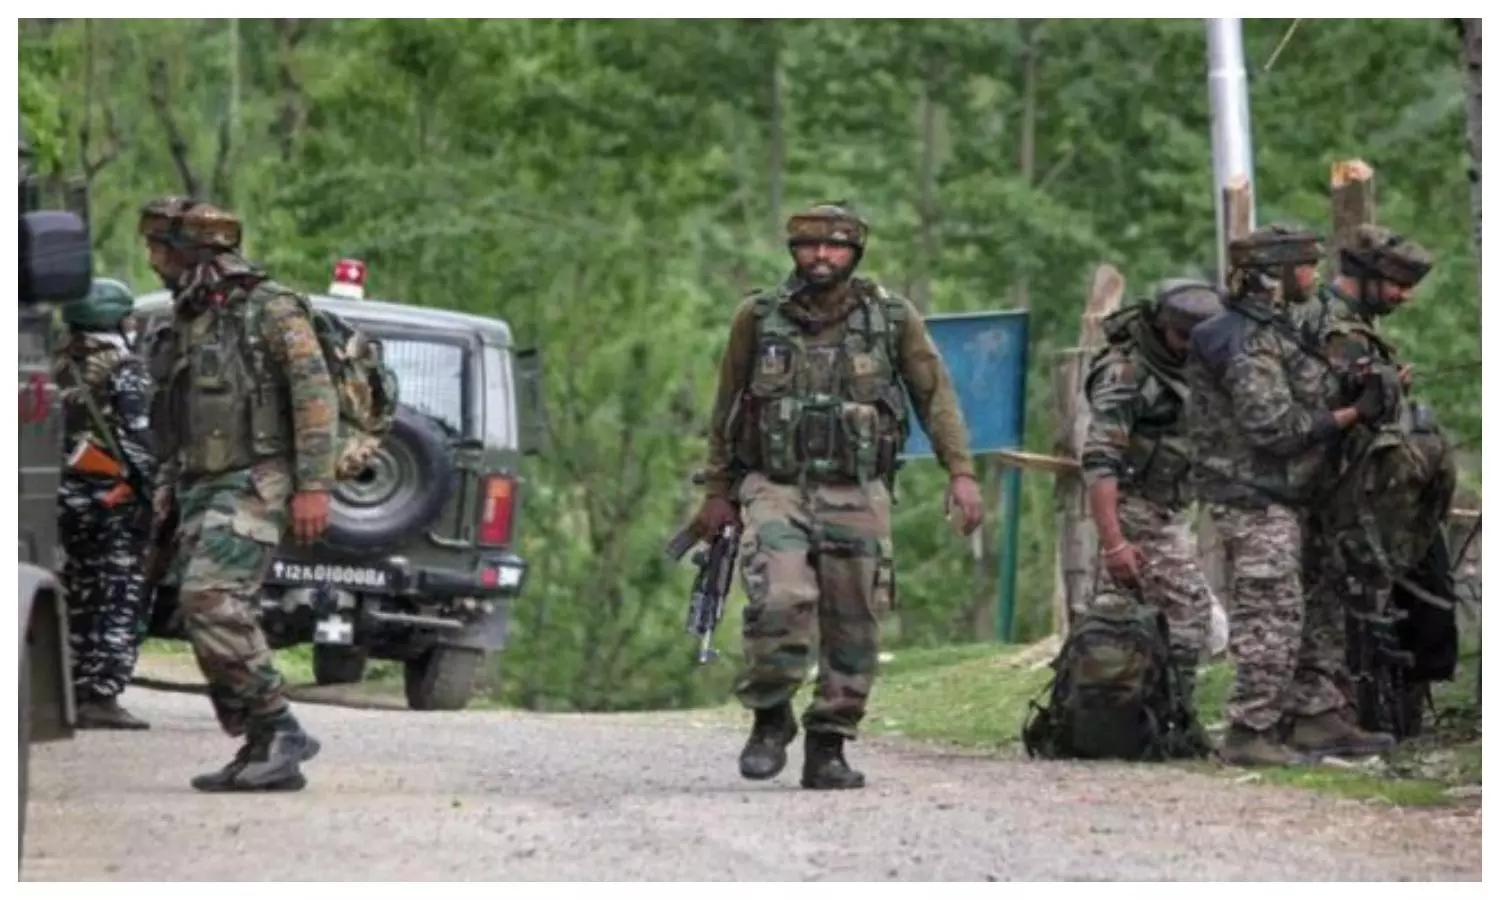 Infiltration: जम्मू-कश्मीर के LOC में घुसपैठ की कोशिश नाकाम, सुरक्षबलों ने मार गिराया एक आतंकी, ऑपरेशन जारी